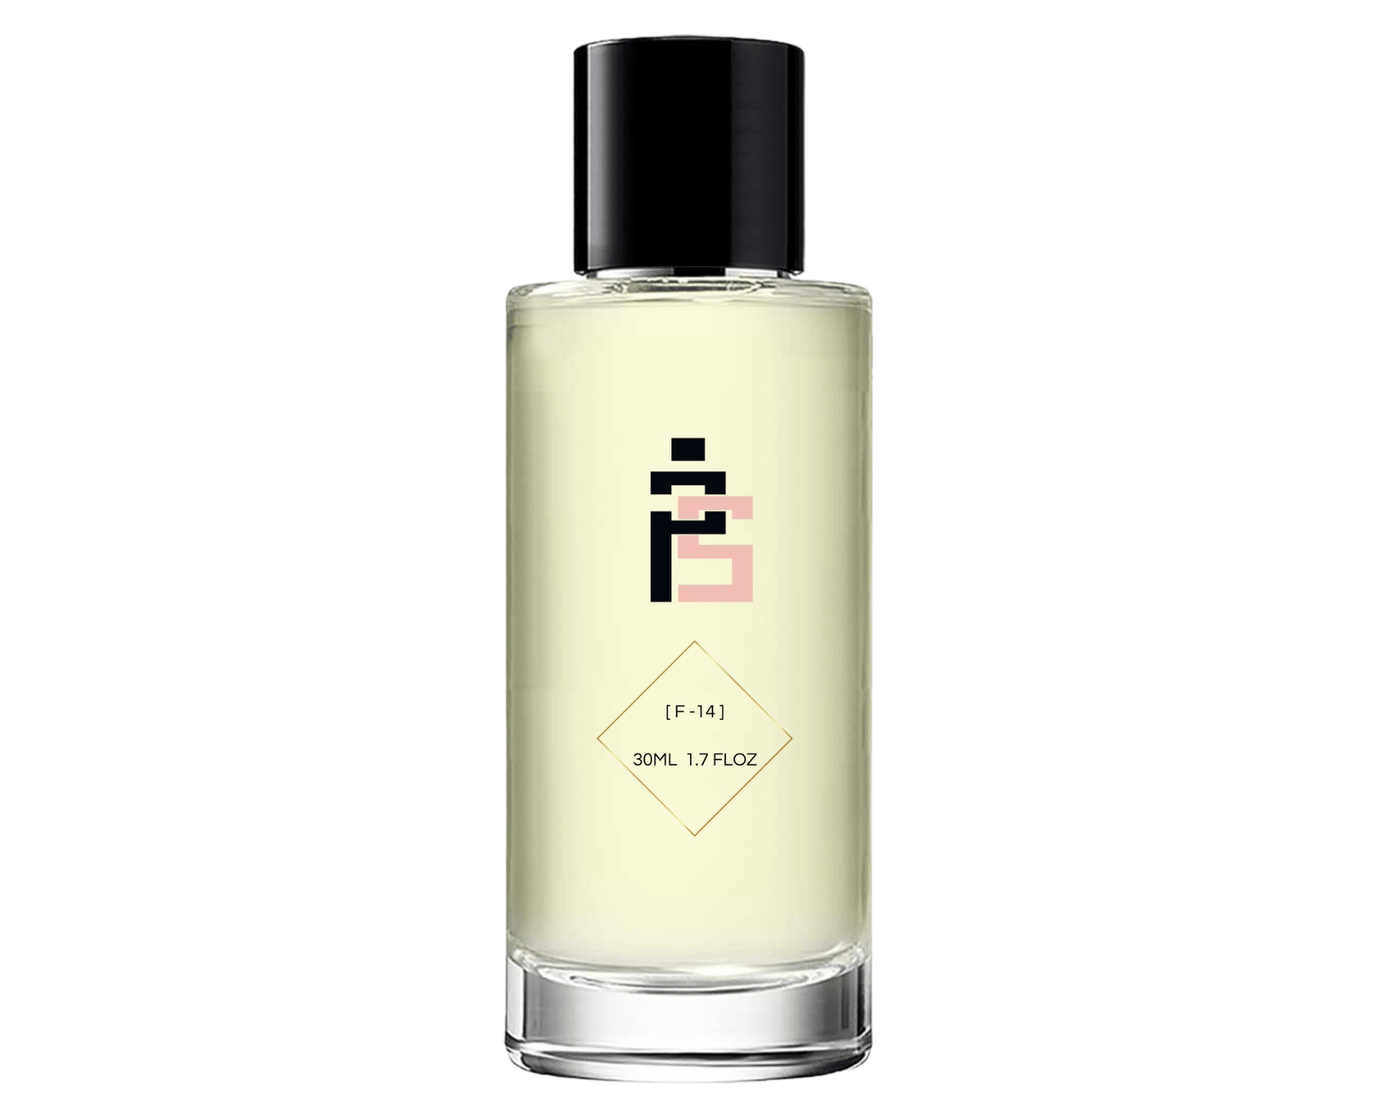 Parfum - F14 | similaire à Mon Guerlain